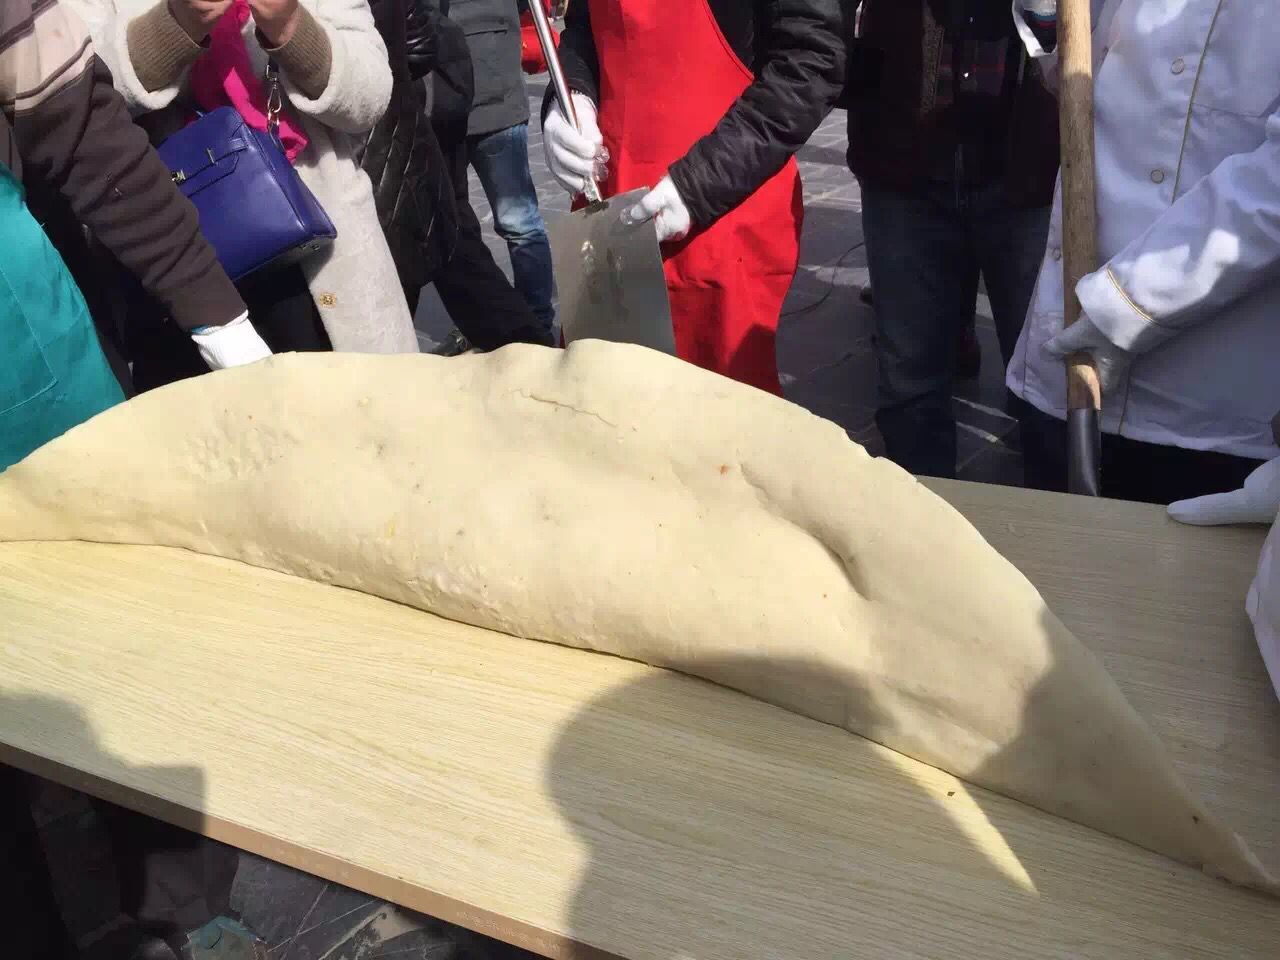 三河米饺节：你见过用“米“单位测量的米饺吗